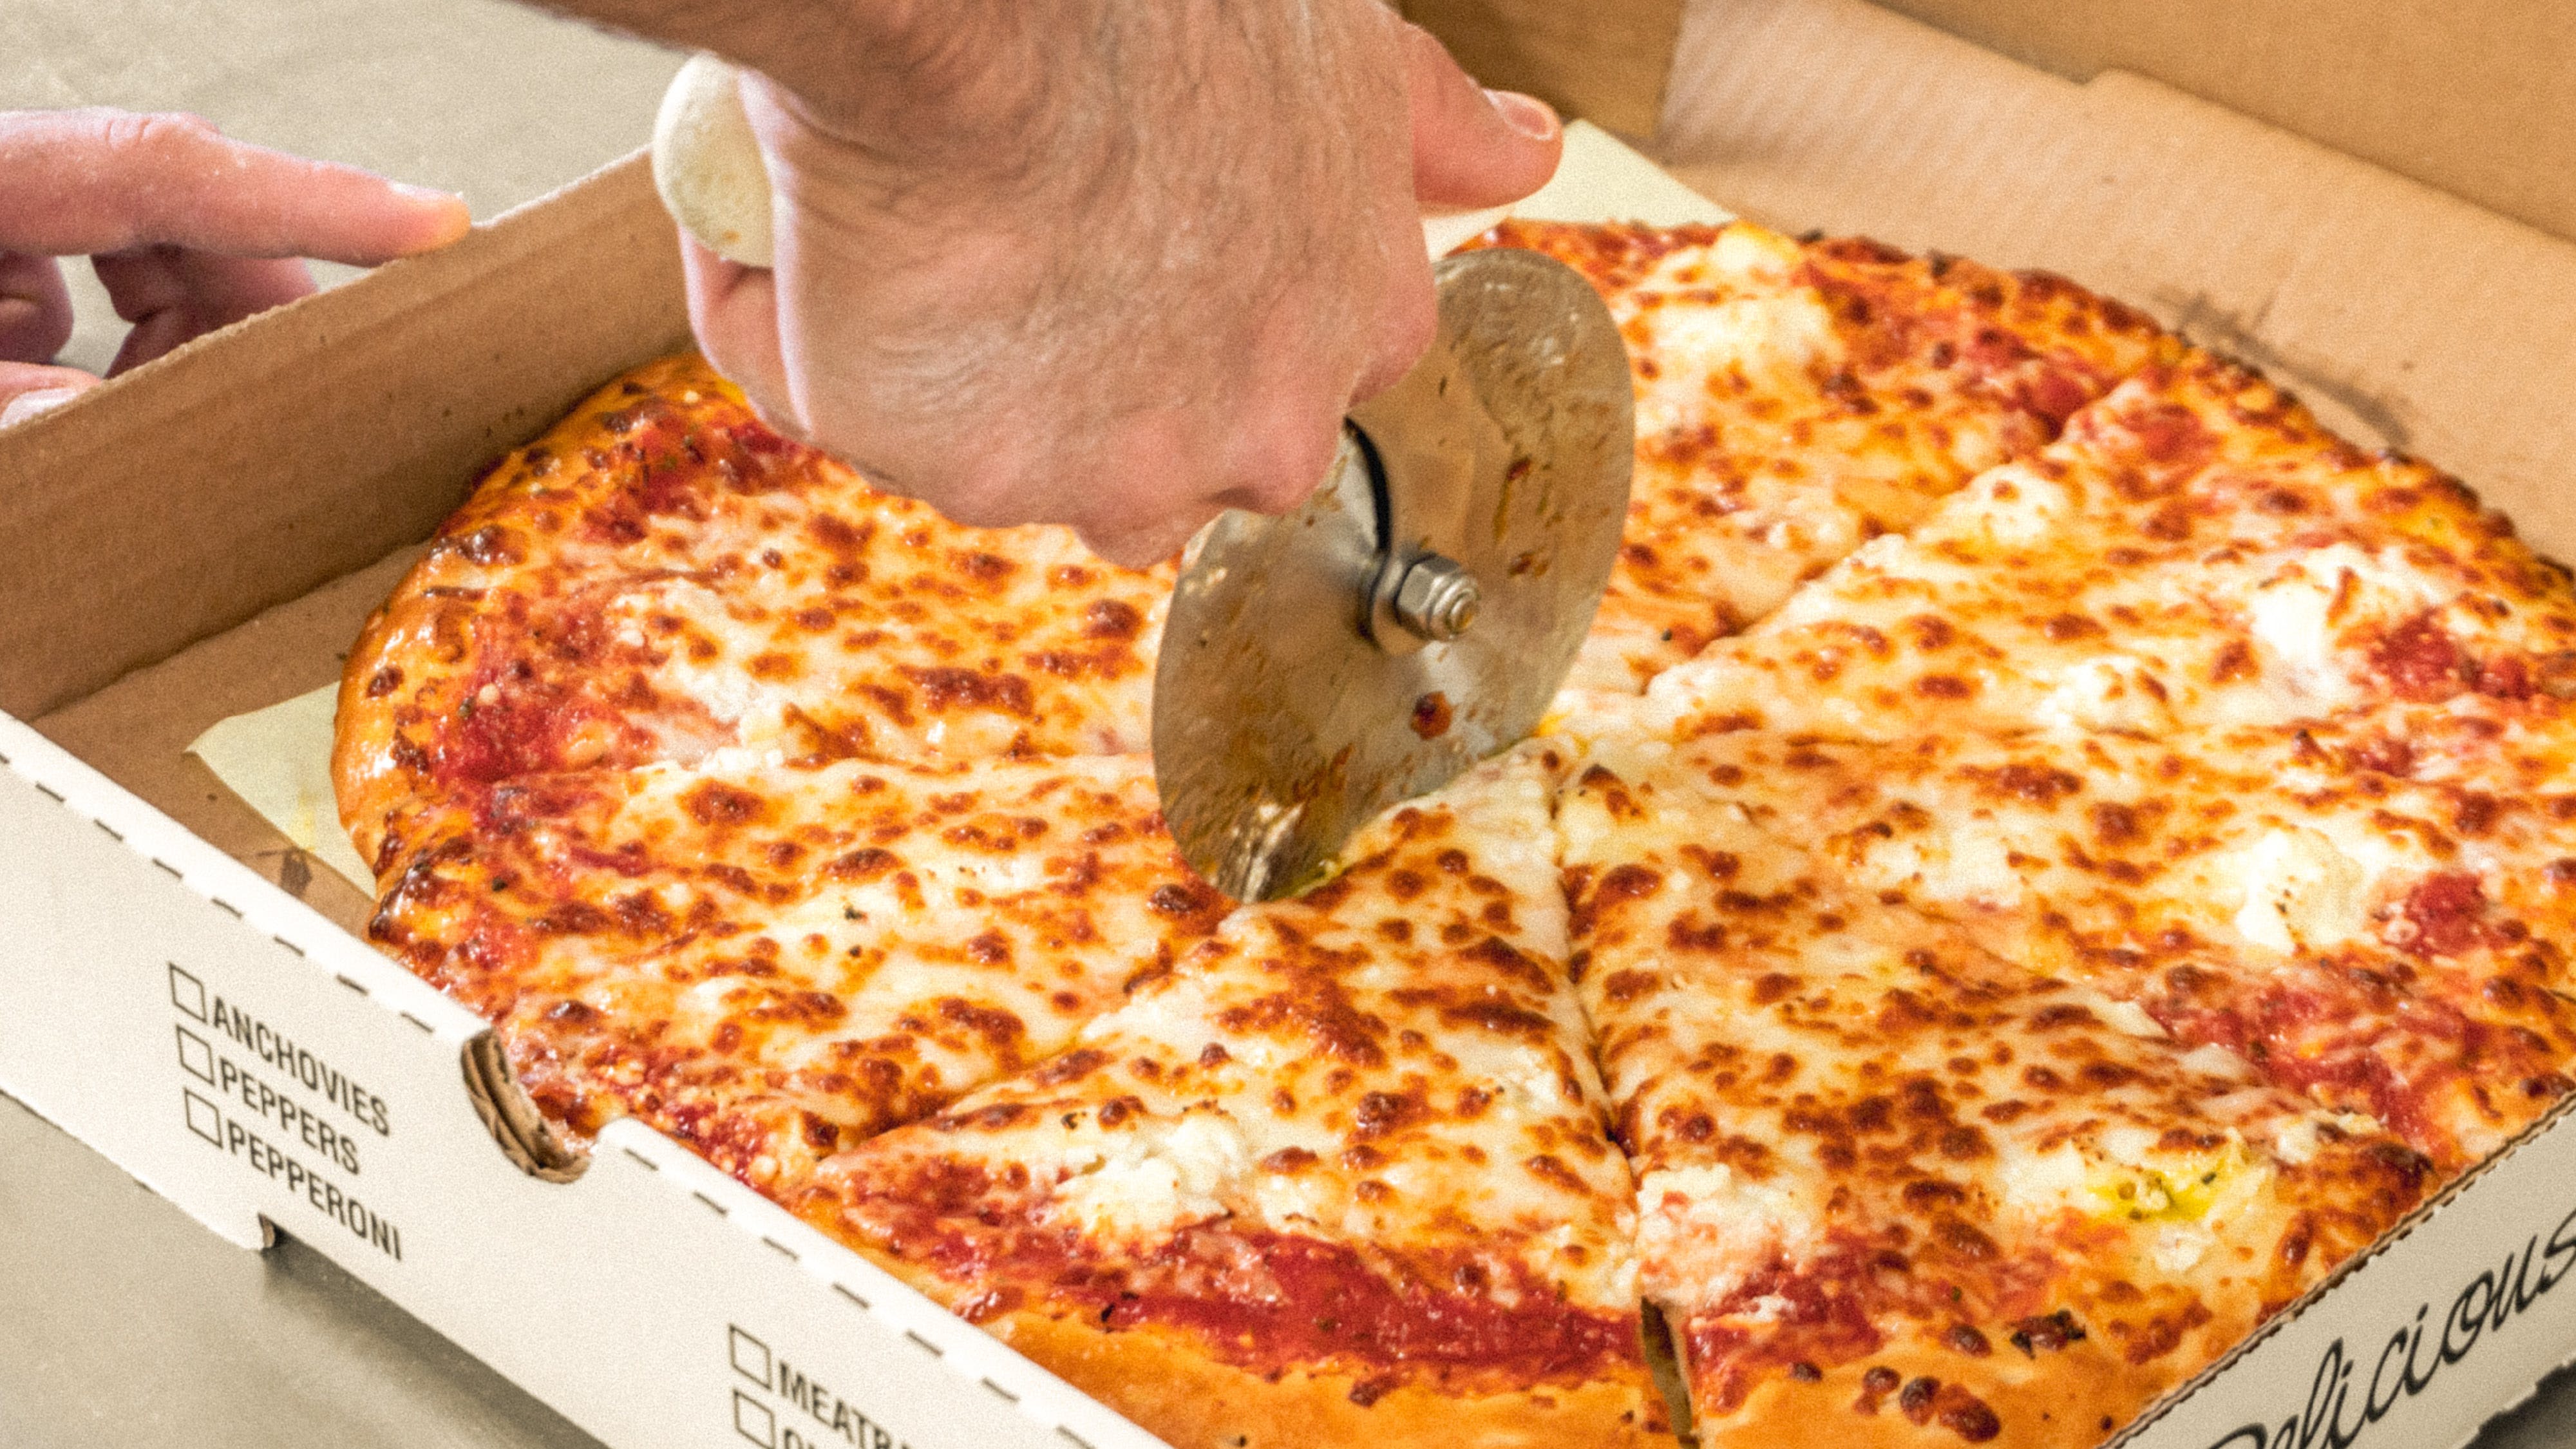 Ruffino's Pizza & Subs hero